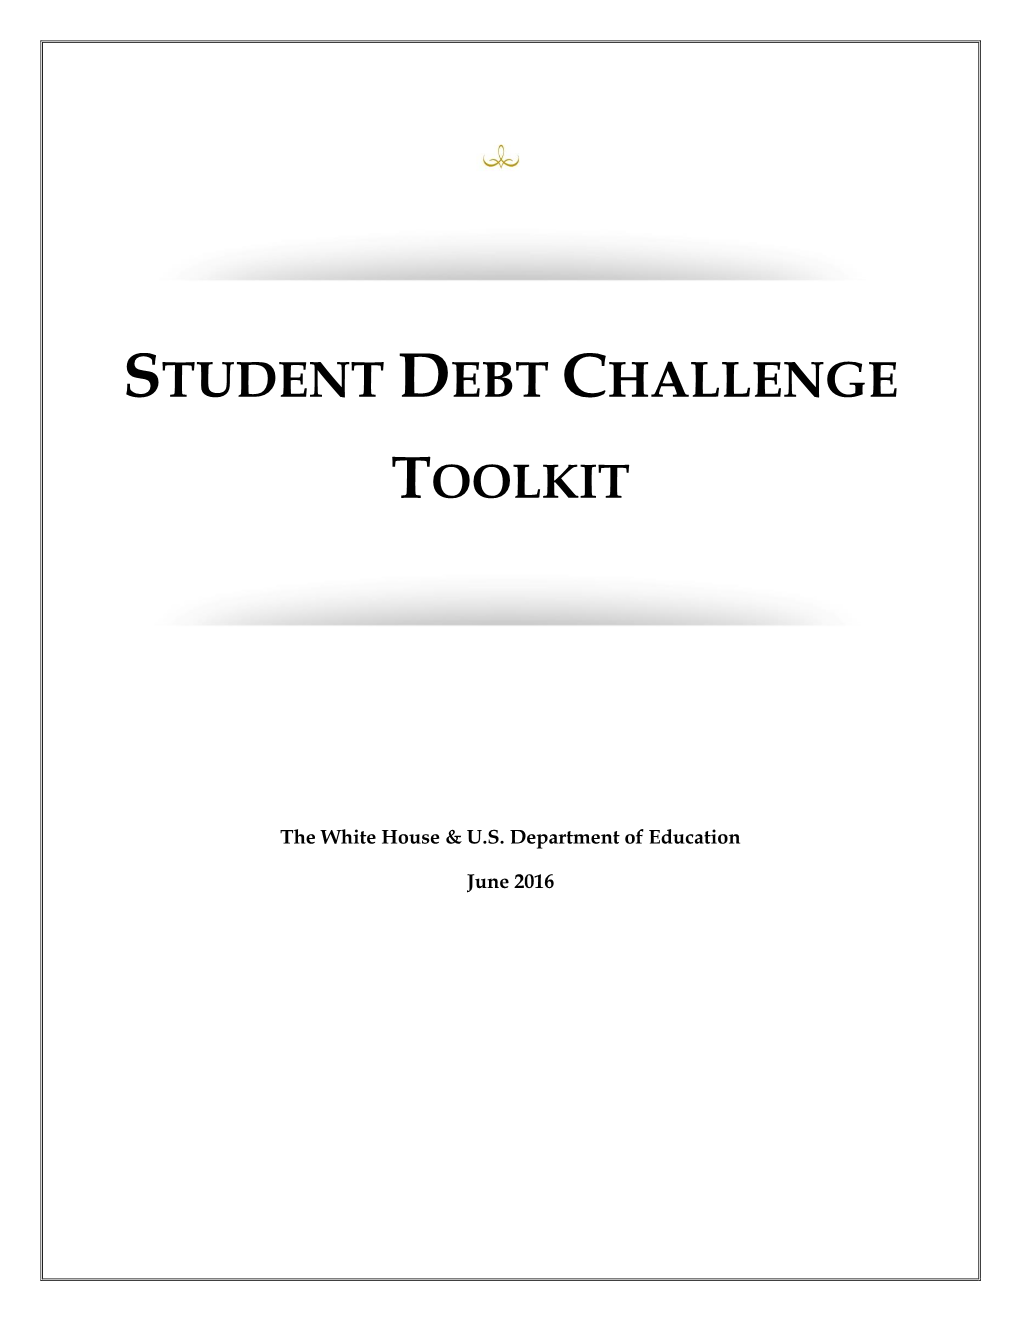 Student Debt Challenge Toolkit